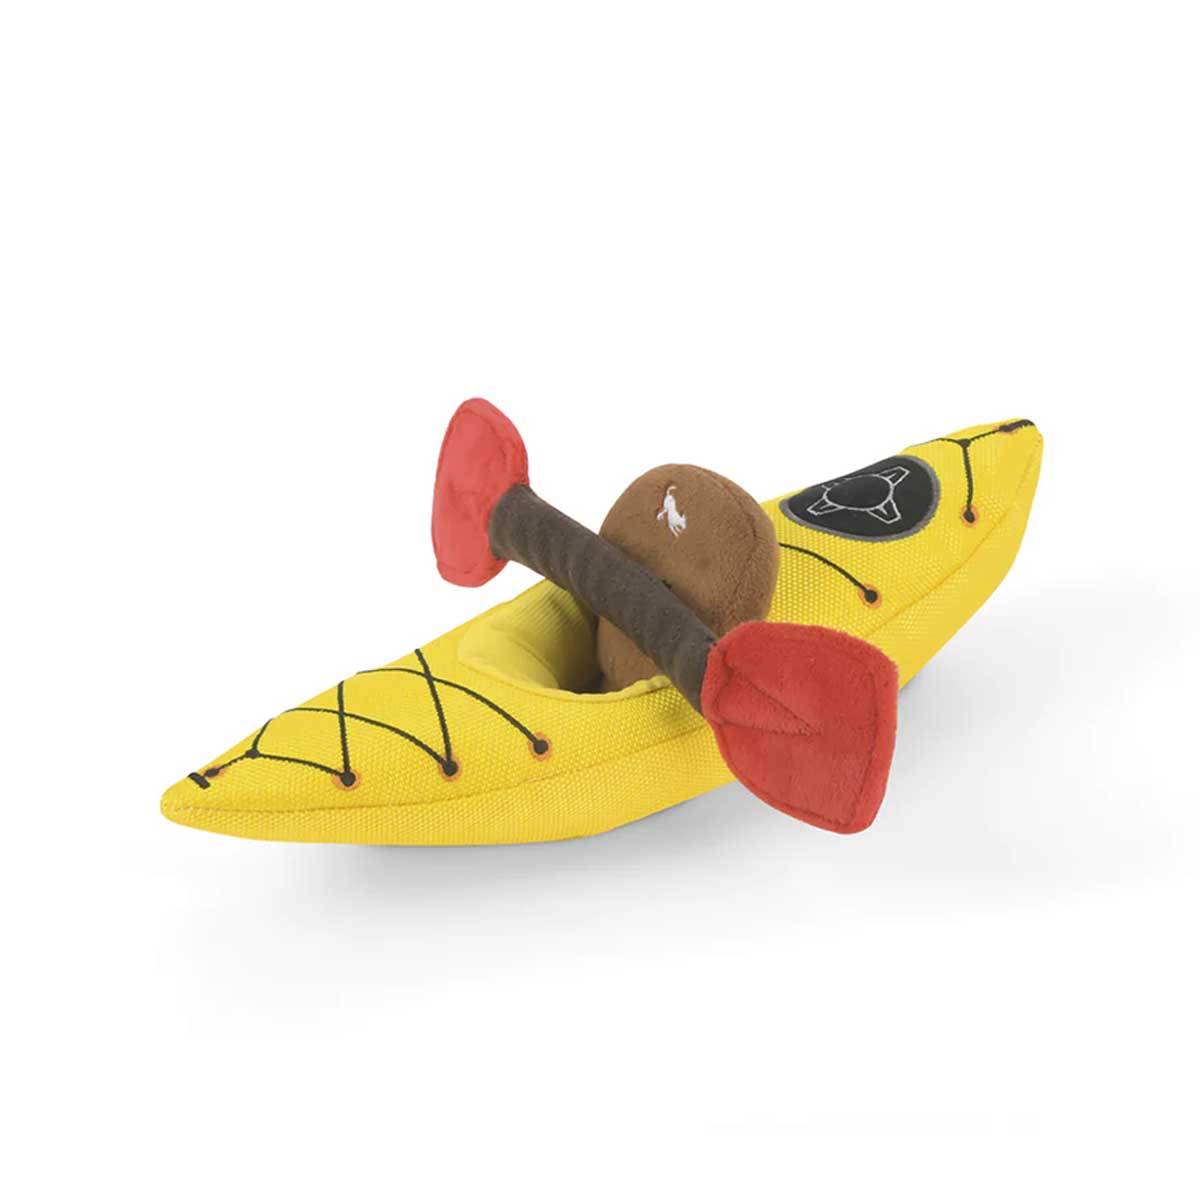 K9 Kayak Plush Dog Toy | Pawlicious & Company